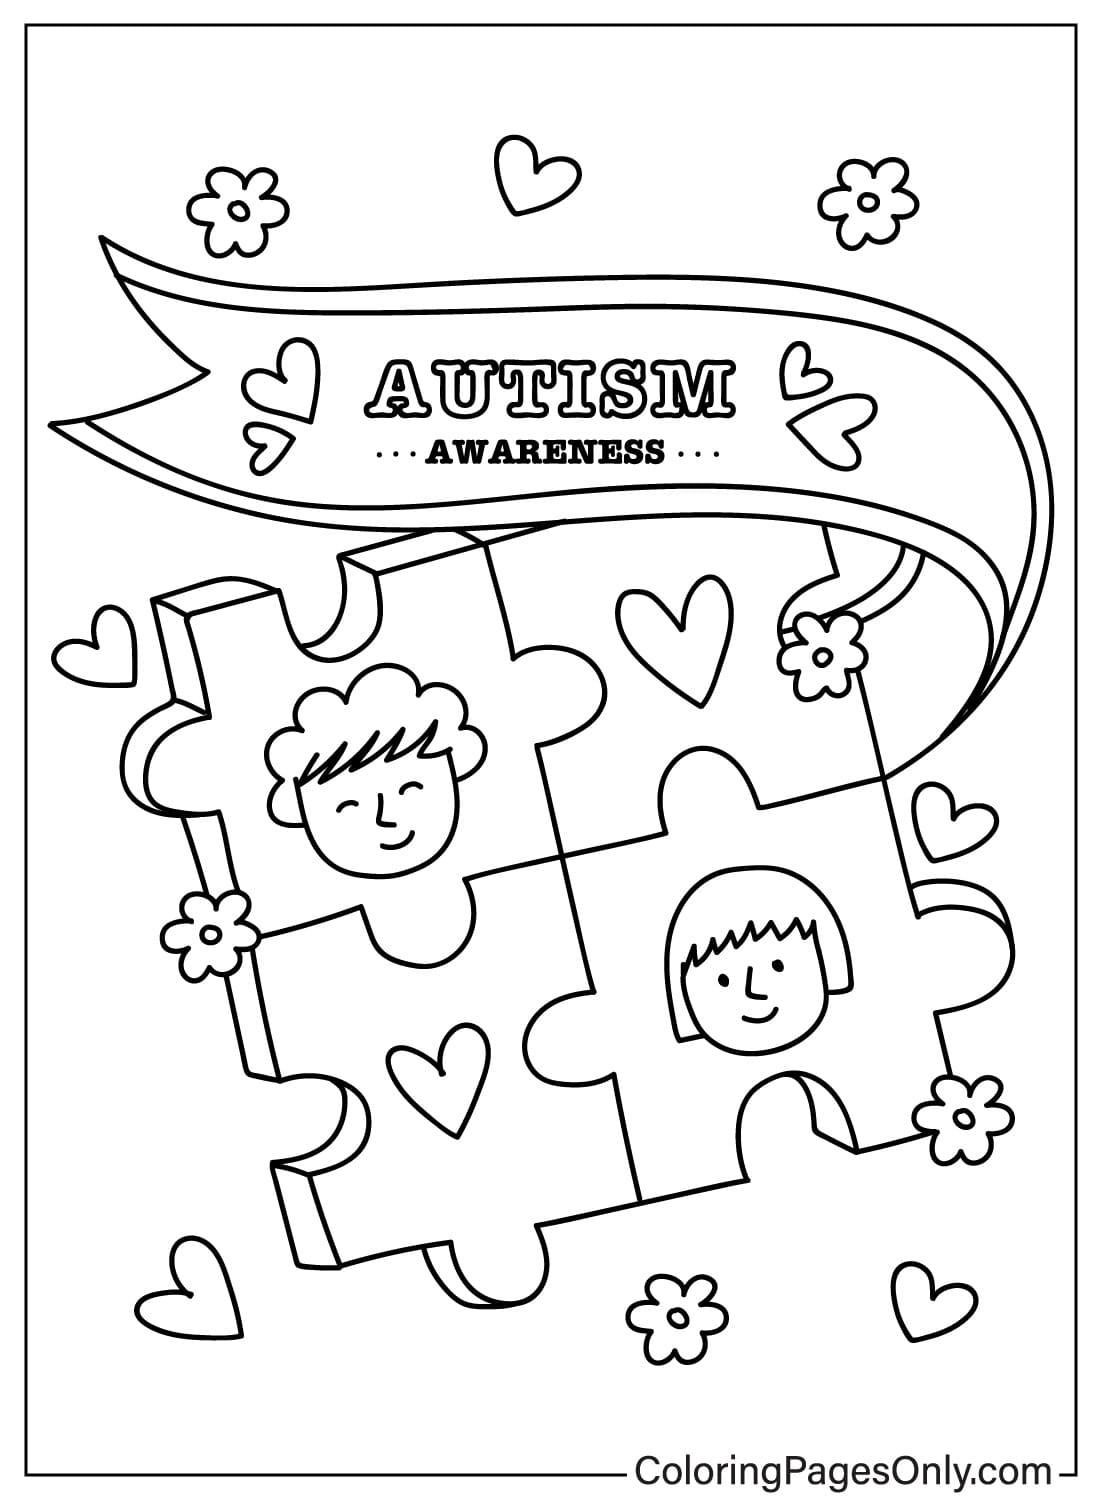 Imagen para colorear de concientización sobre el autismo del Día Mundial de Concientización sobre el Autismo